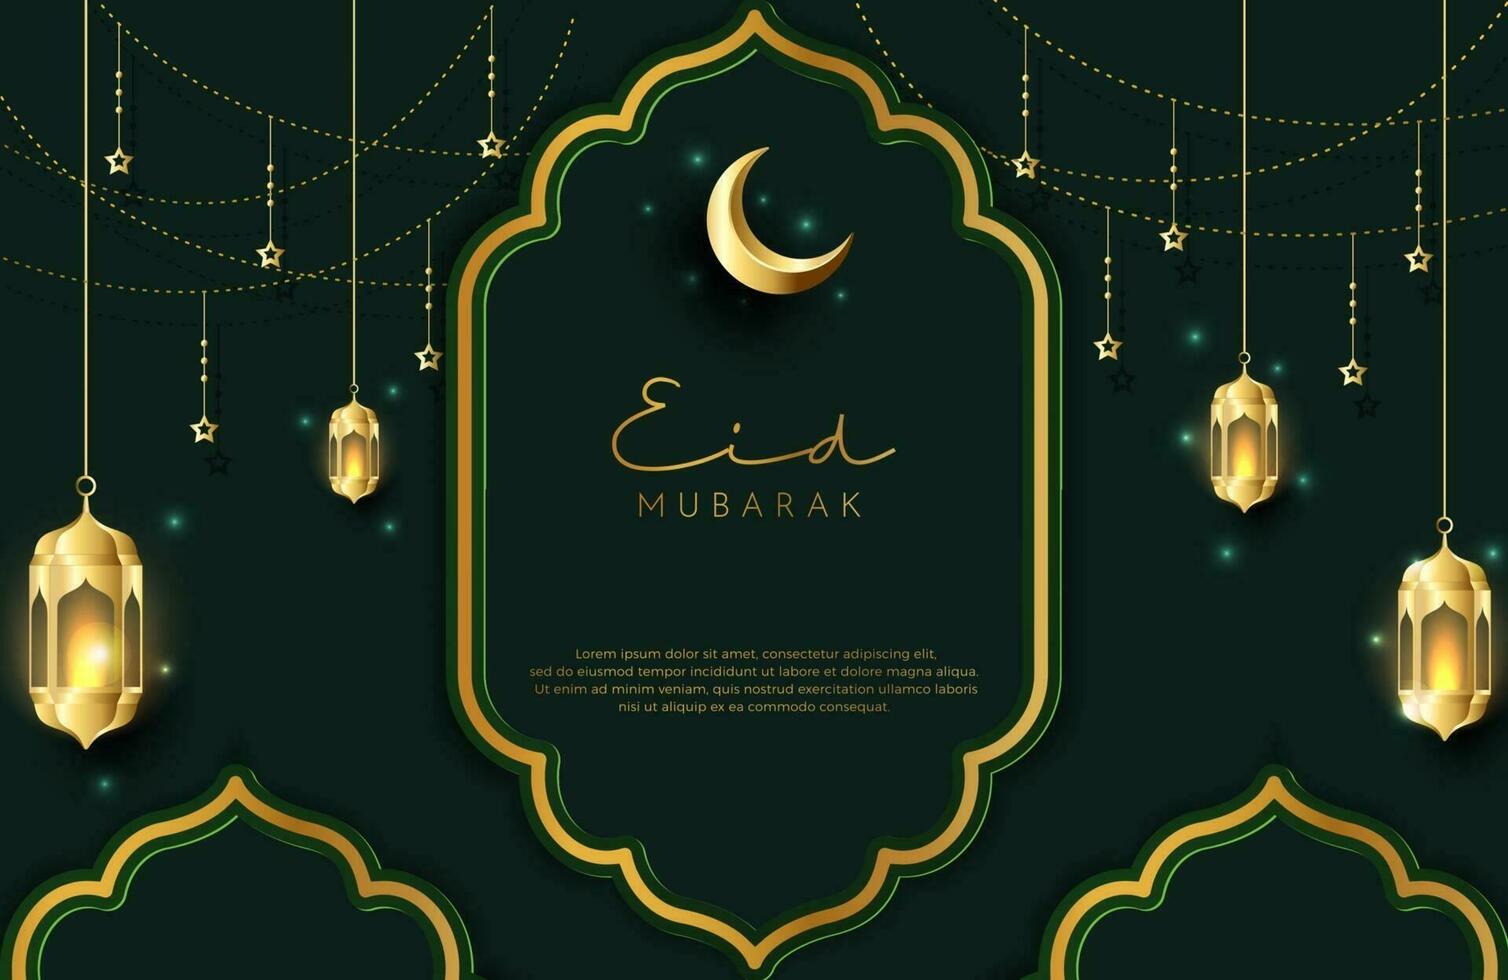 fond eid mubarak dans un style de luxe illustration vectorielle de design islamique vert foncé avec lanterne d'or et croissant de lune pour les célébrations du mois sacré islamique vecteur